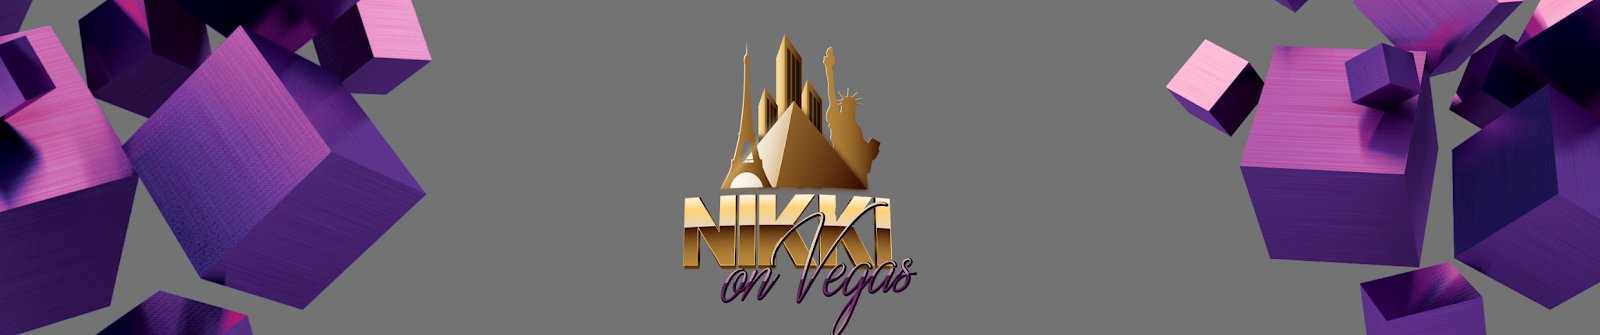 Nikki On Vegas